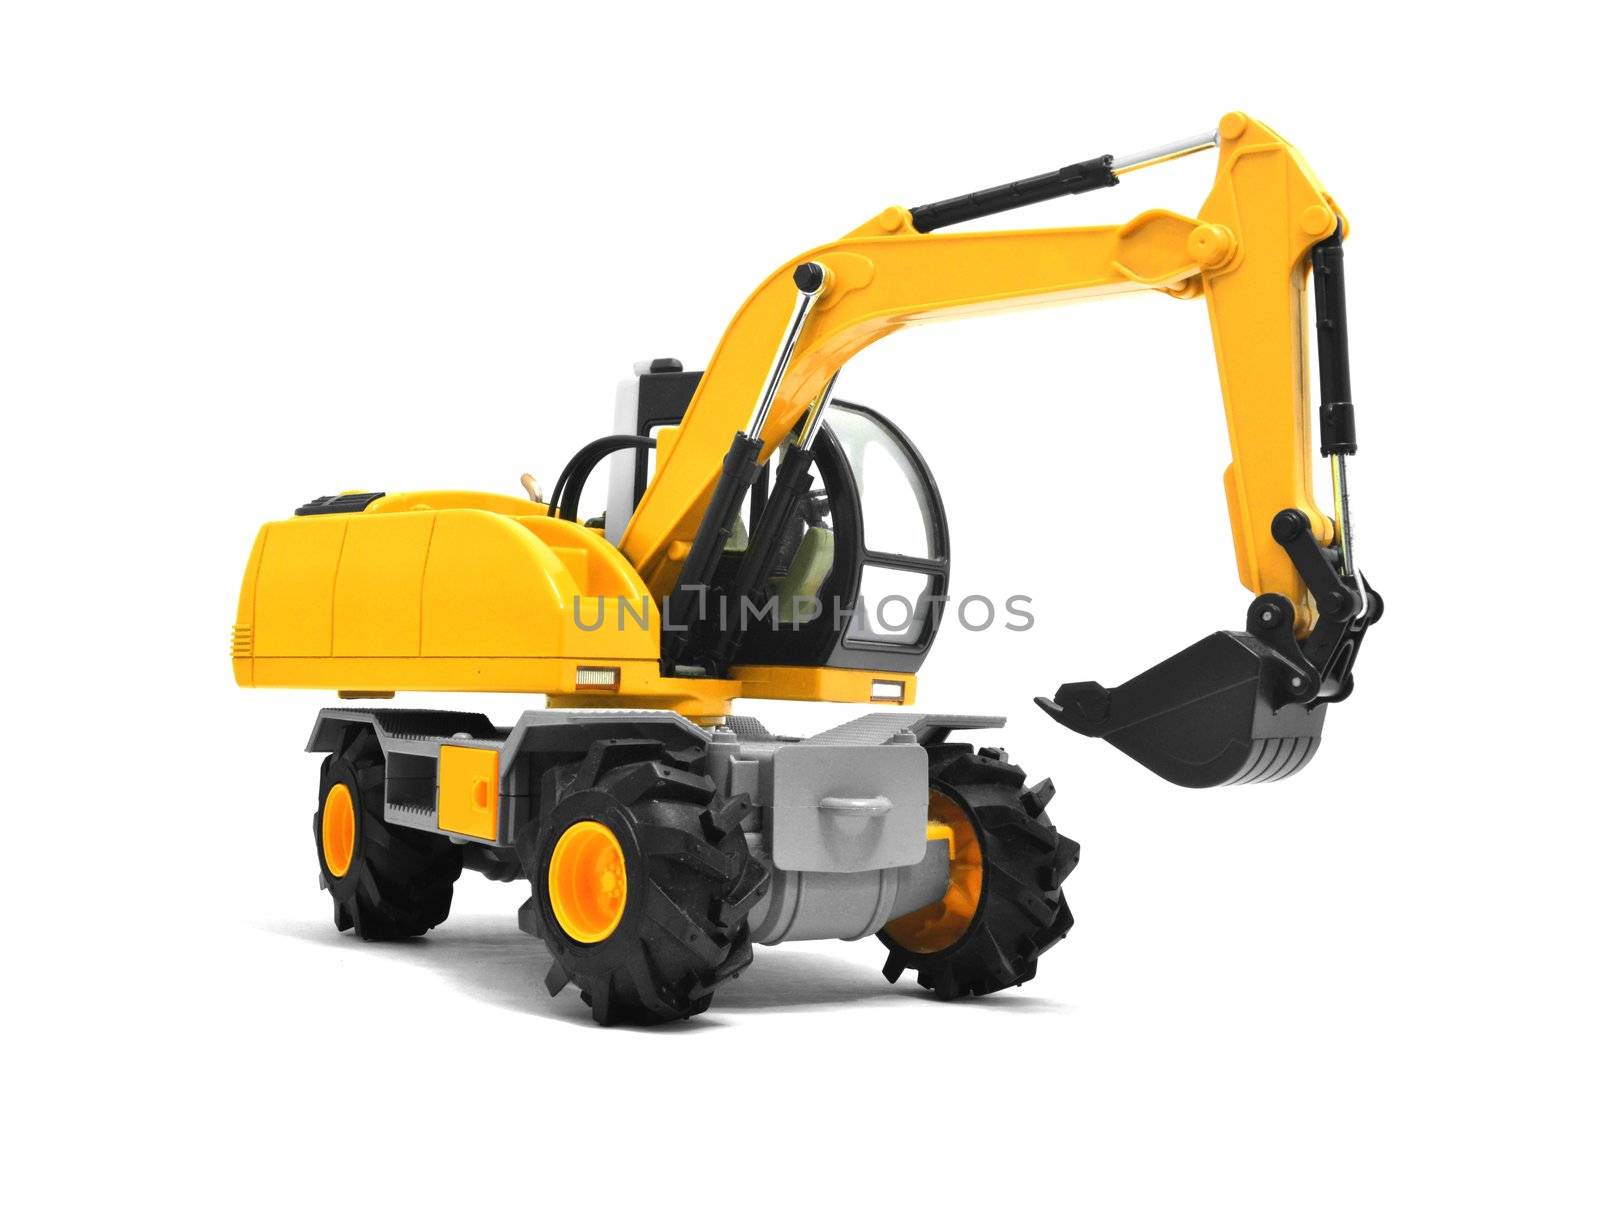 Modern yellow excavator machines